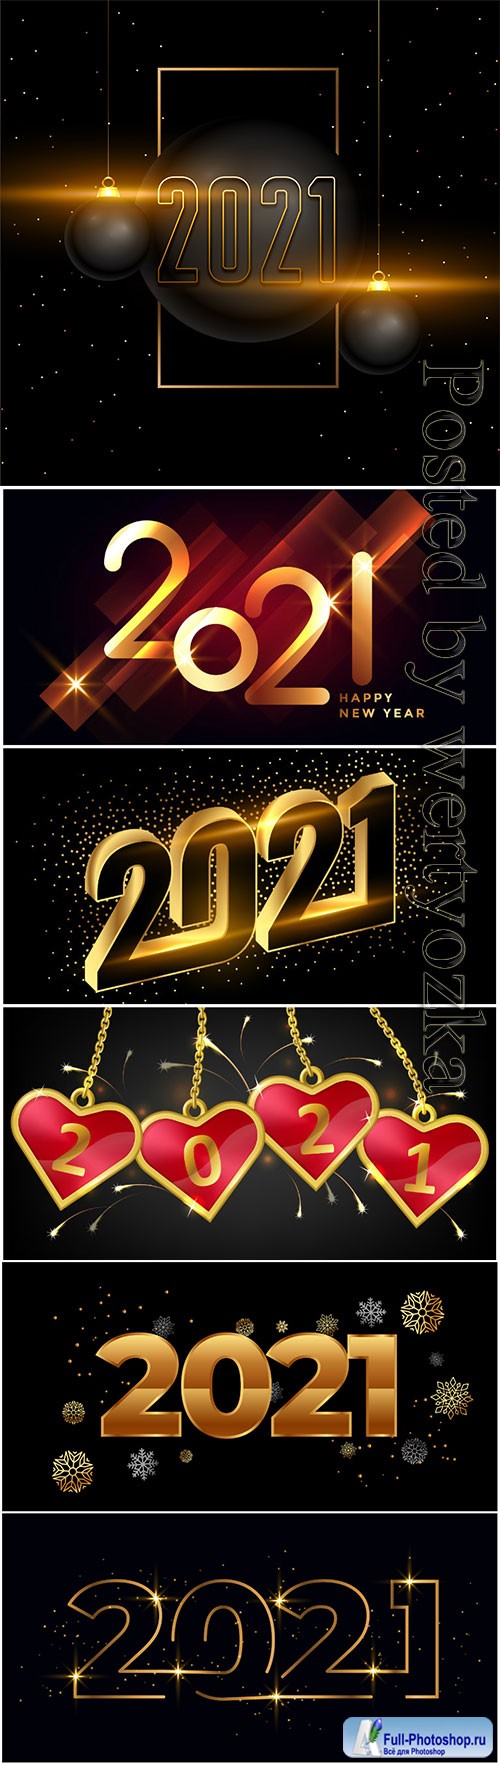 Happy new year luxury golden elegant text